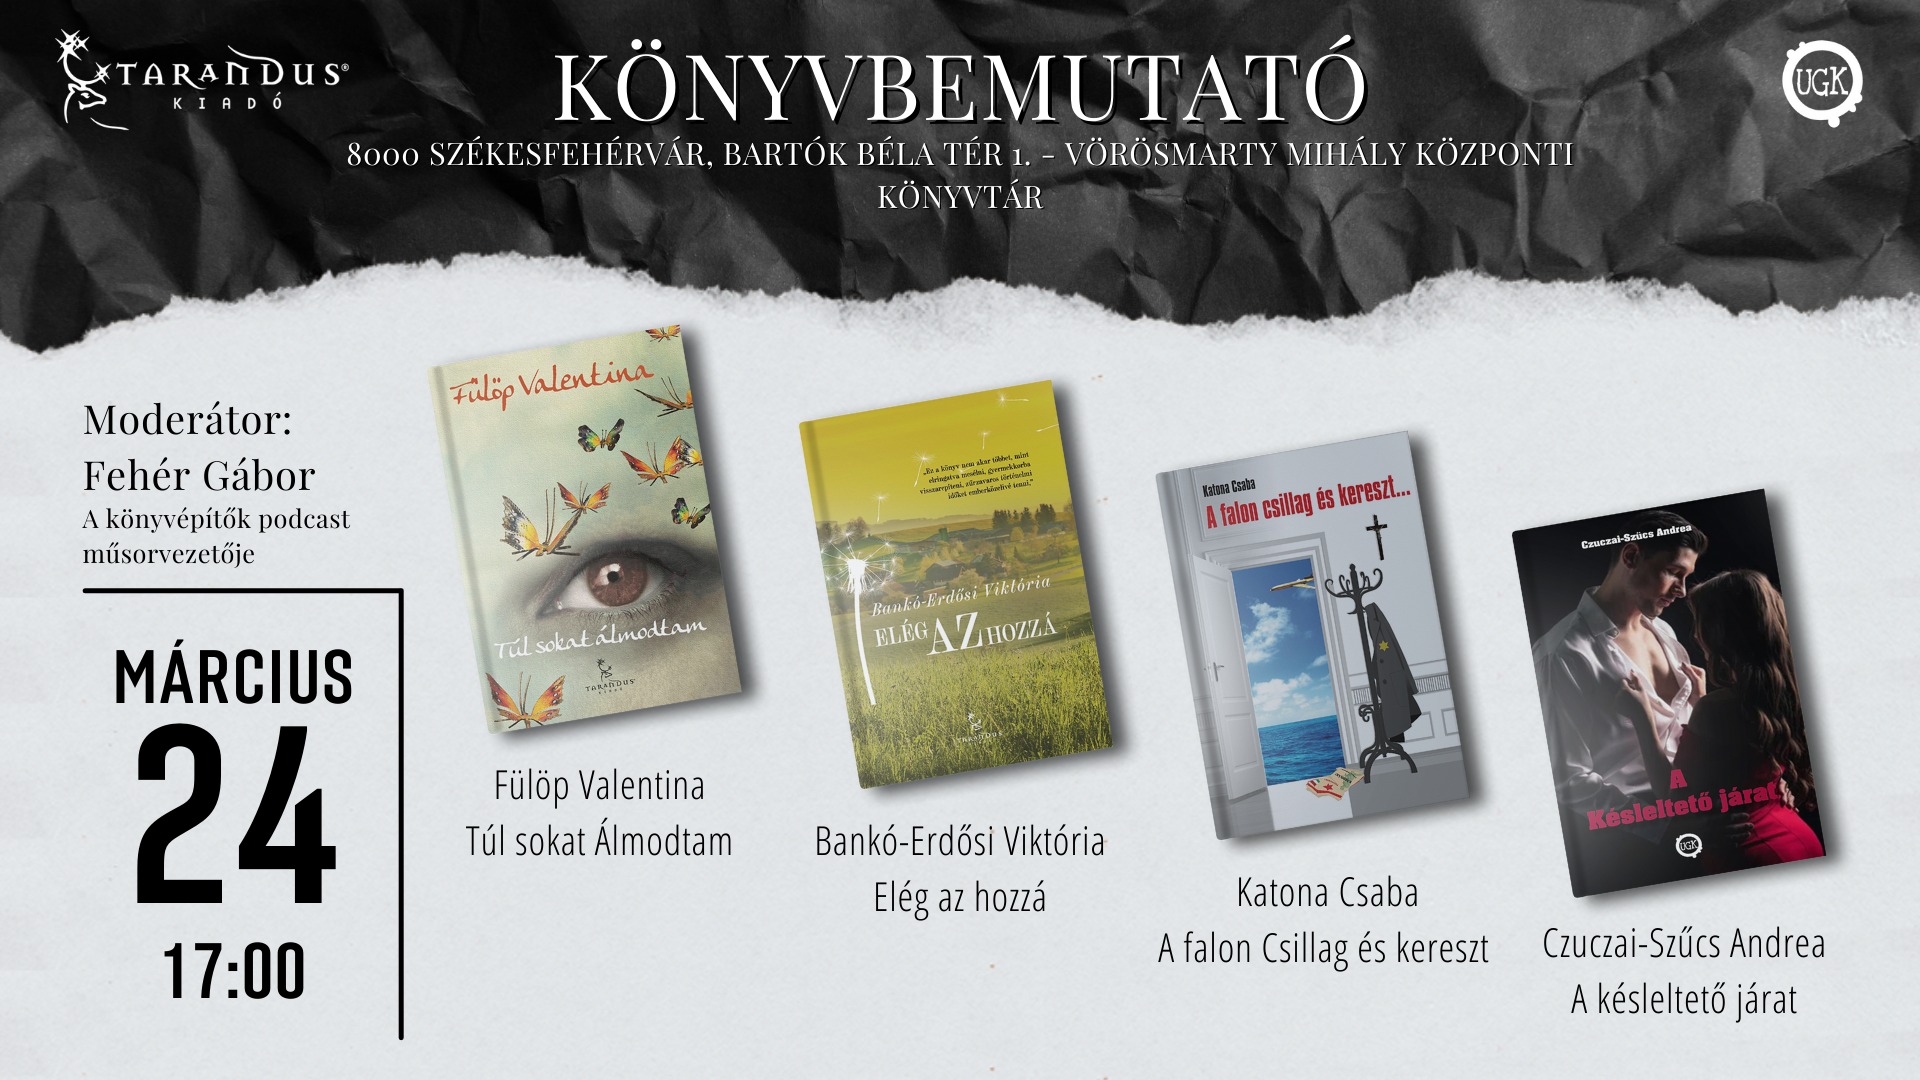 Négy szerző könyvét is bemutatják csütörtökön a Vörösmarty Mihály Könyvtárban